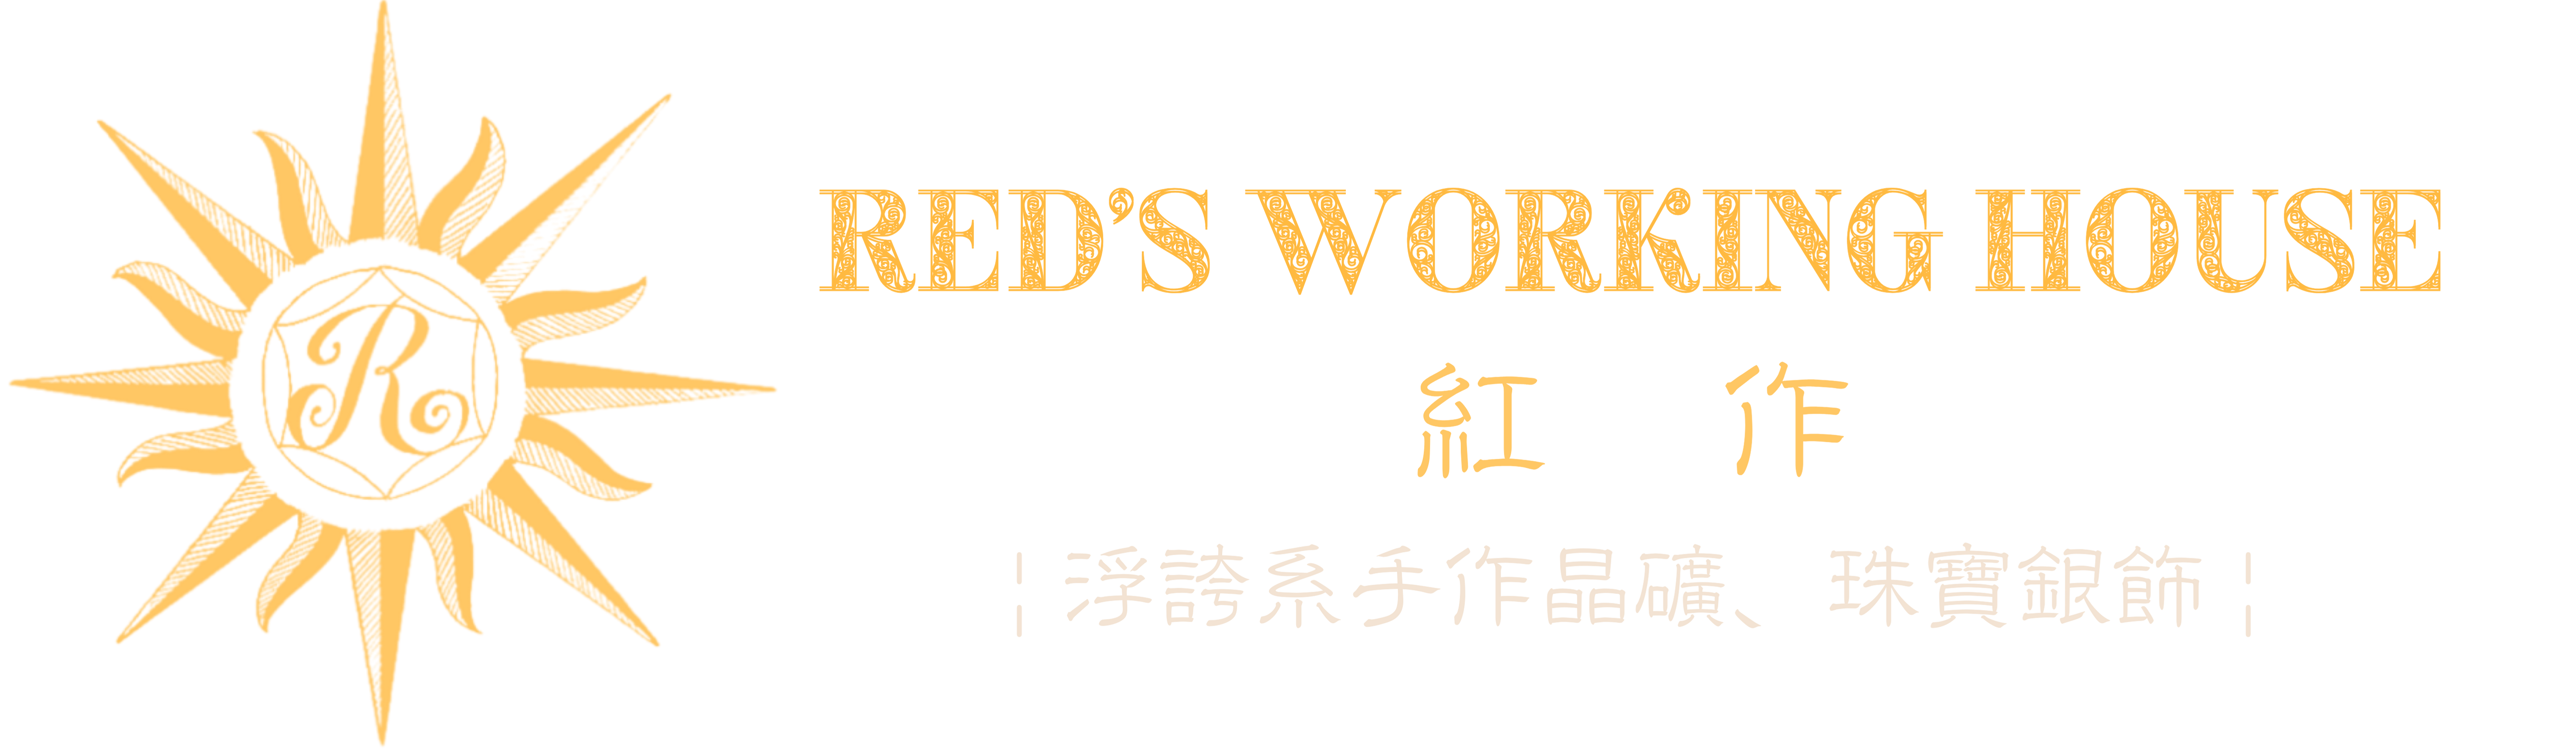 紅作 RED'S WORKING HOUSE 官方網站